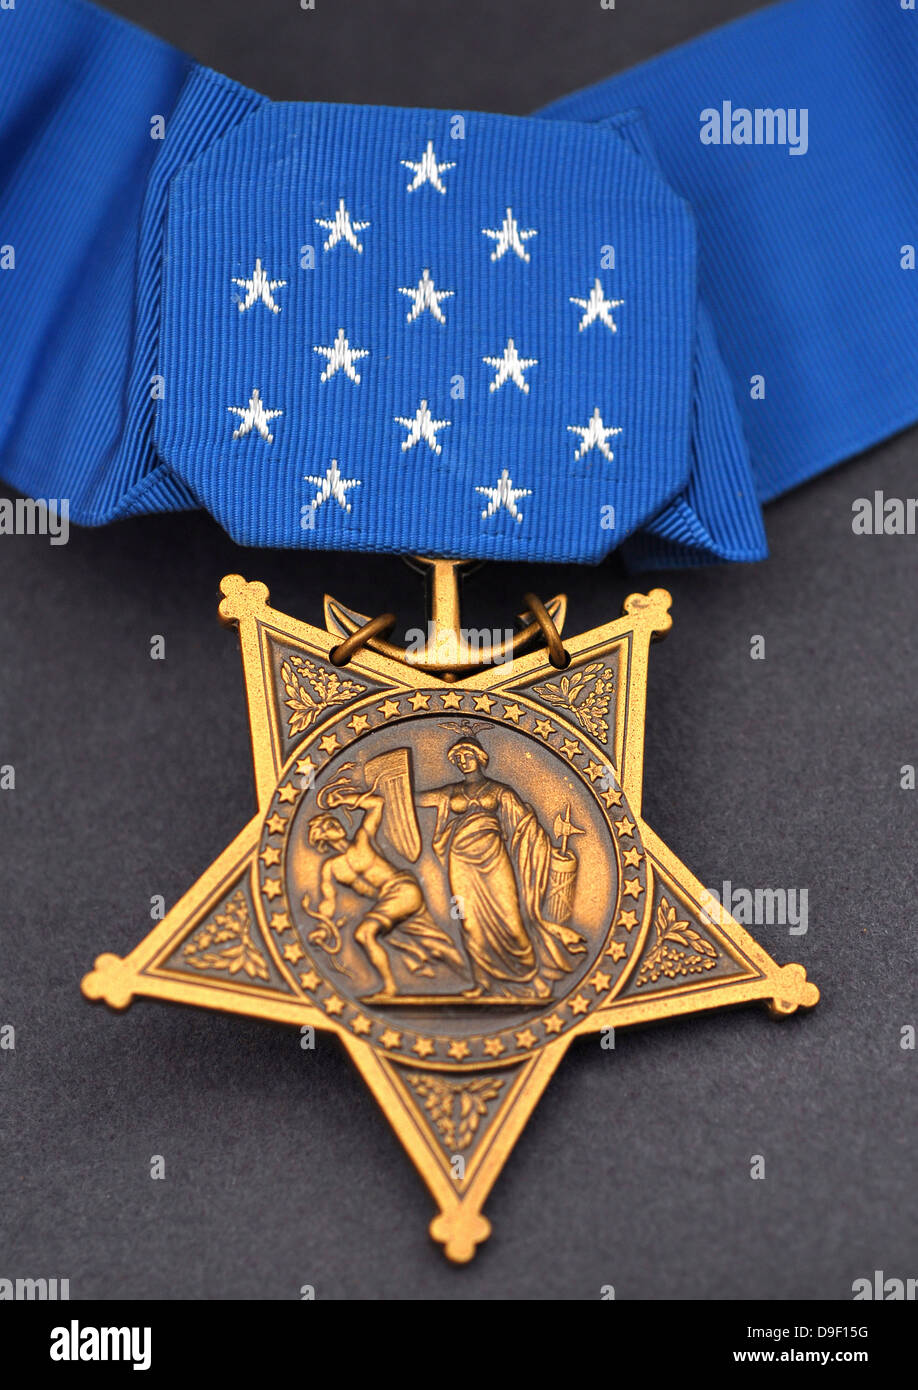 Close-up de la médaille d'honneur décernée à Navy SEALs, la plus haute décoration militaire décernée par le gouvernement américain Banque D'Images